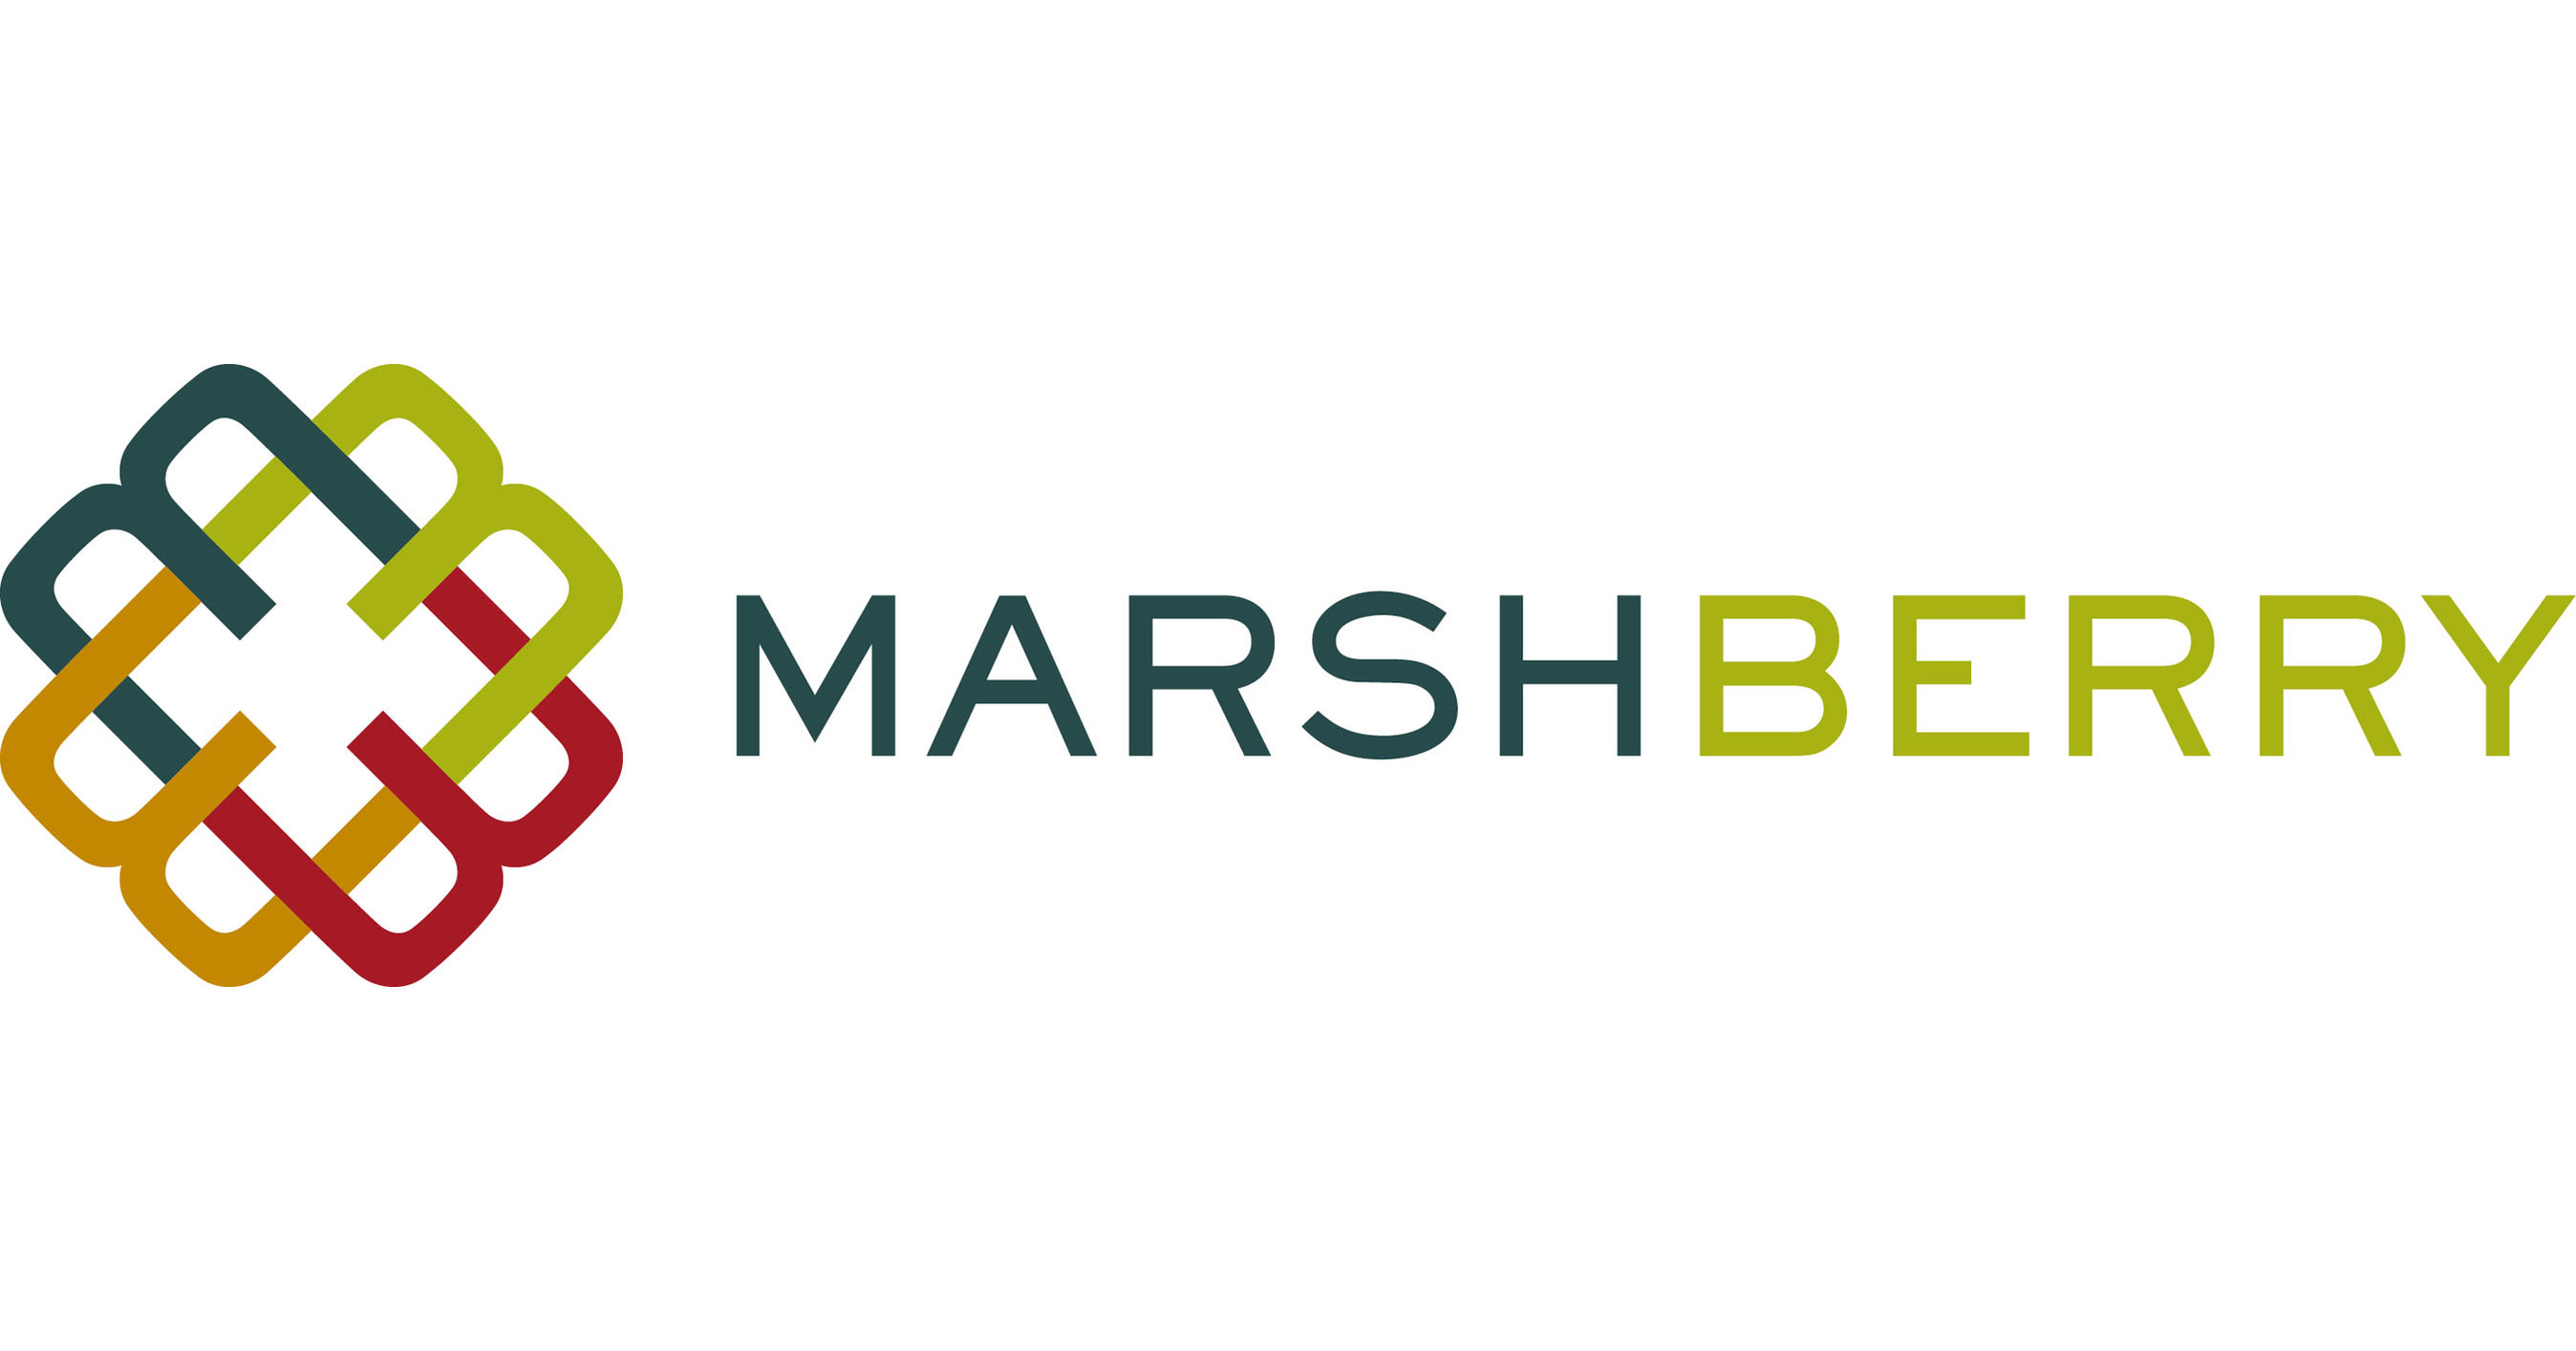 MarshBerry / Atlas Merchant Capital